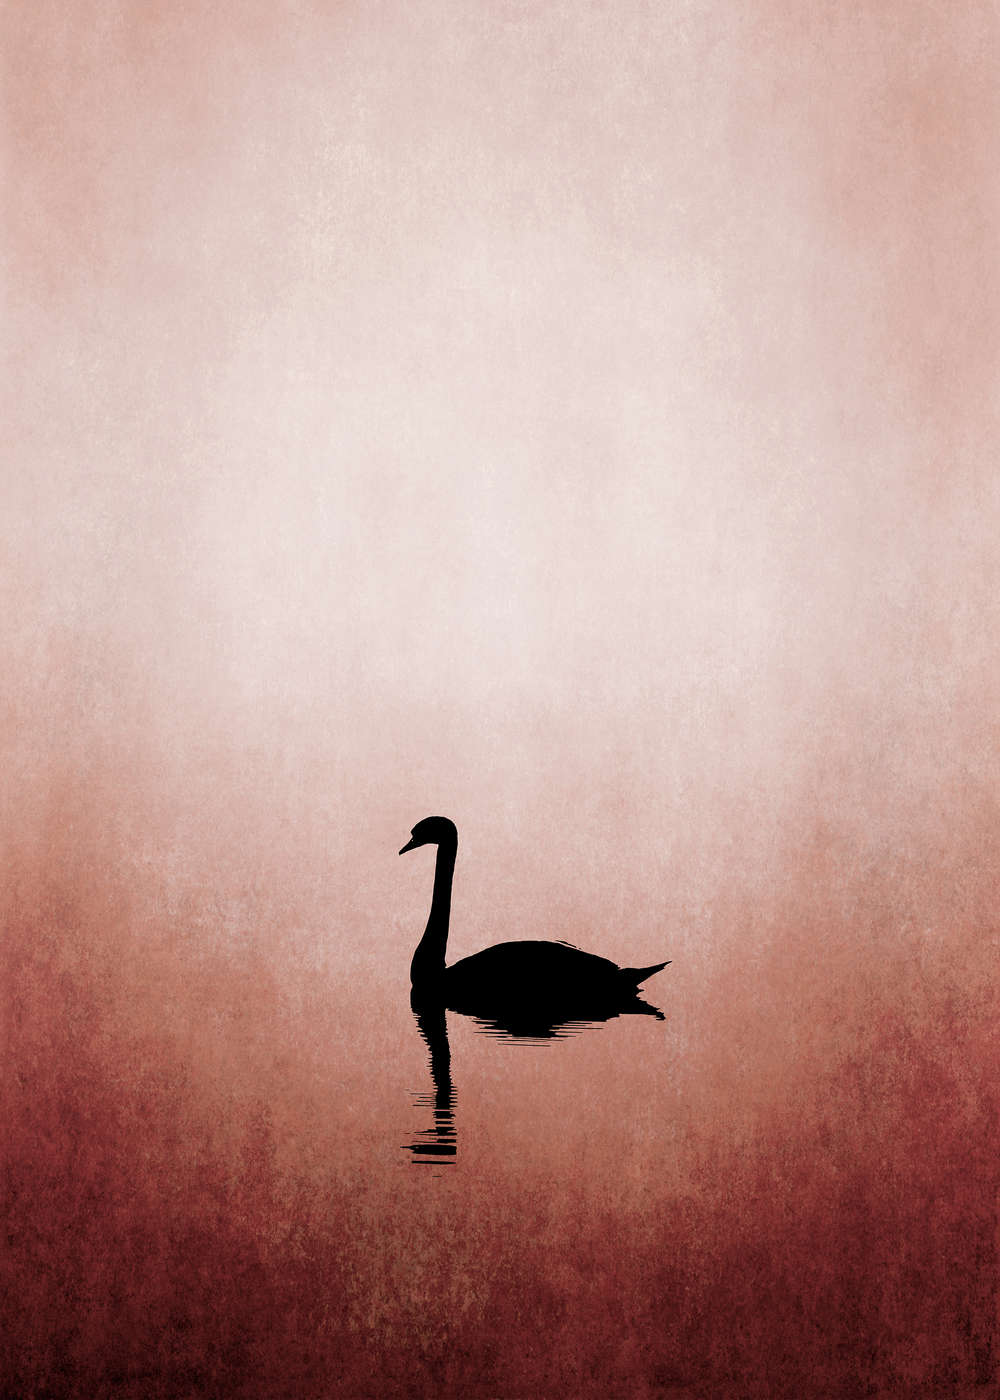             Papel Pintado Cisne y Lago de estilo minimalista
        